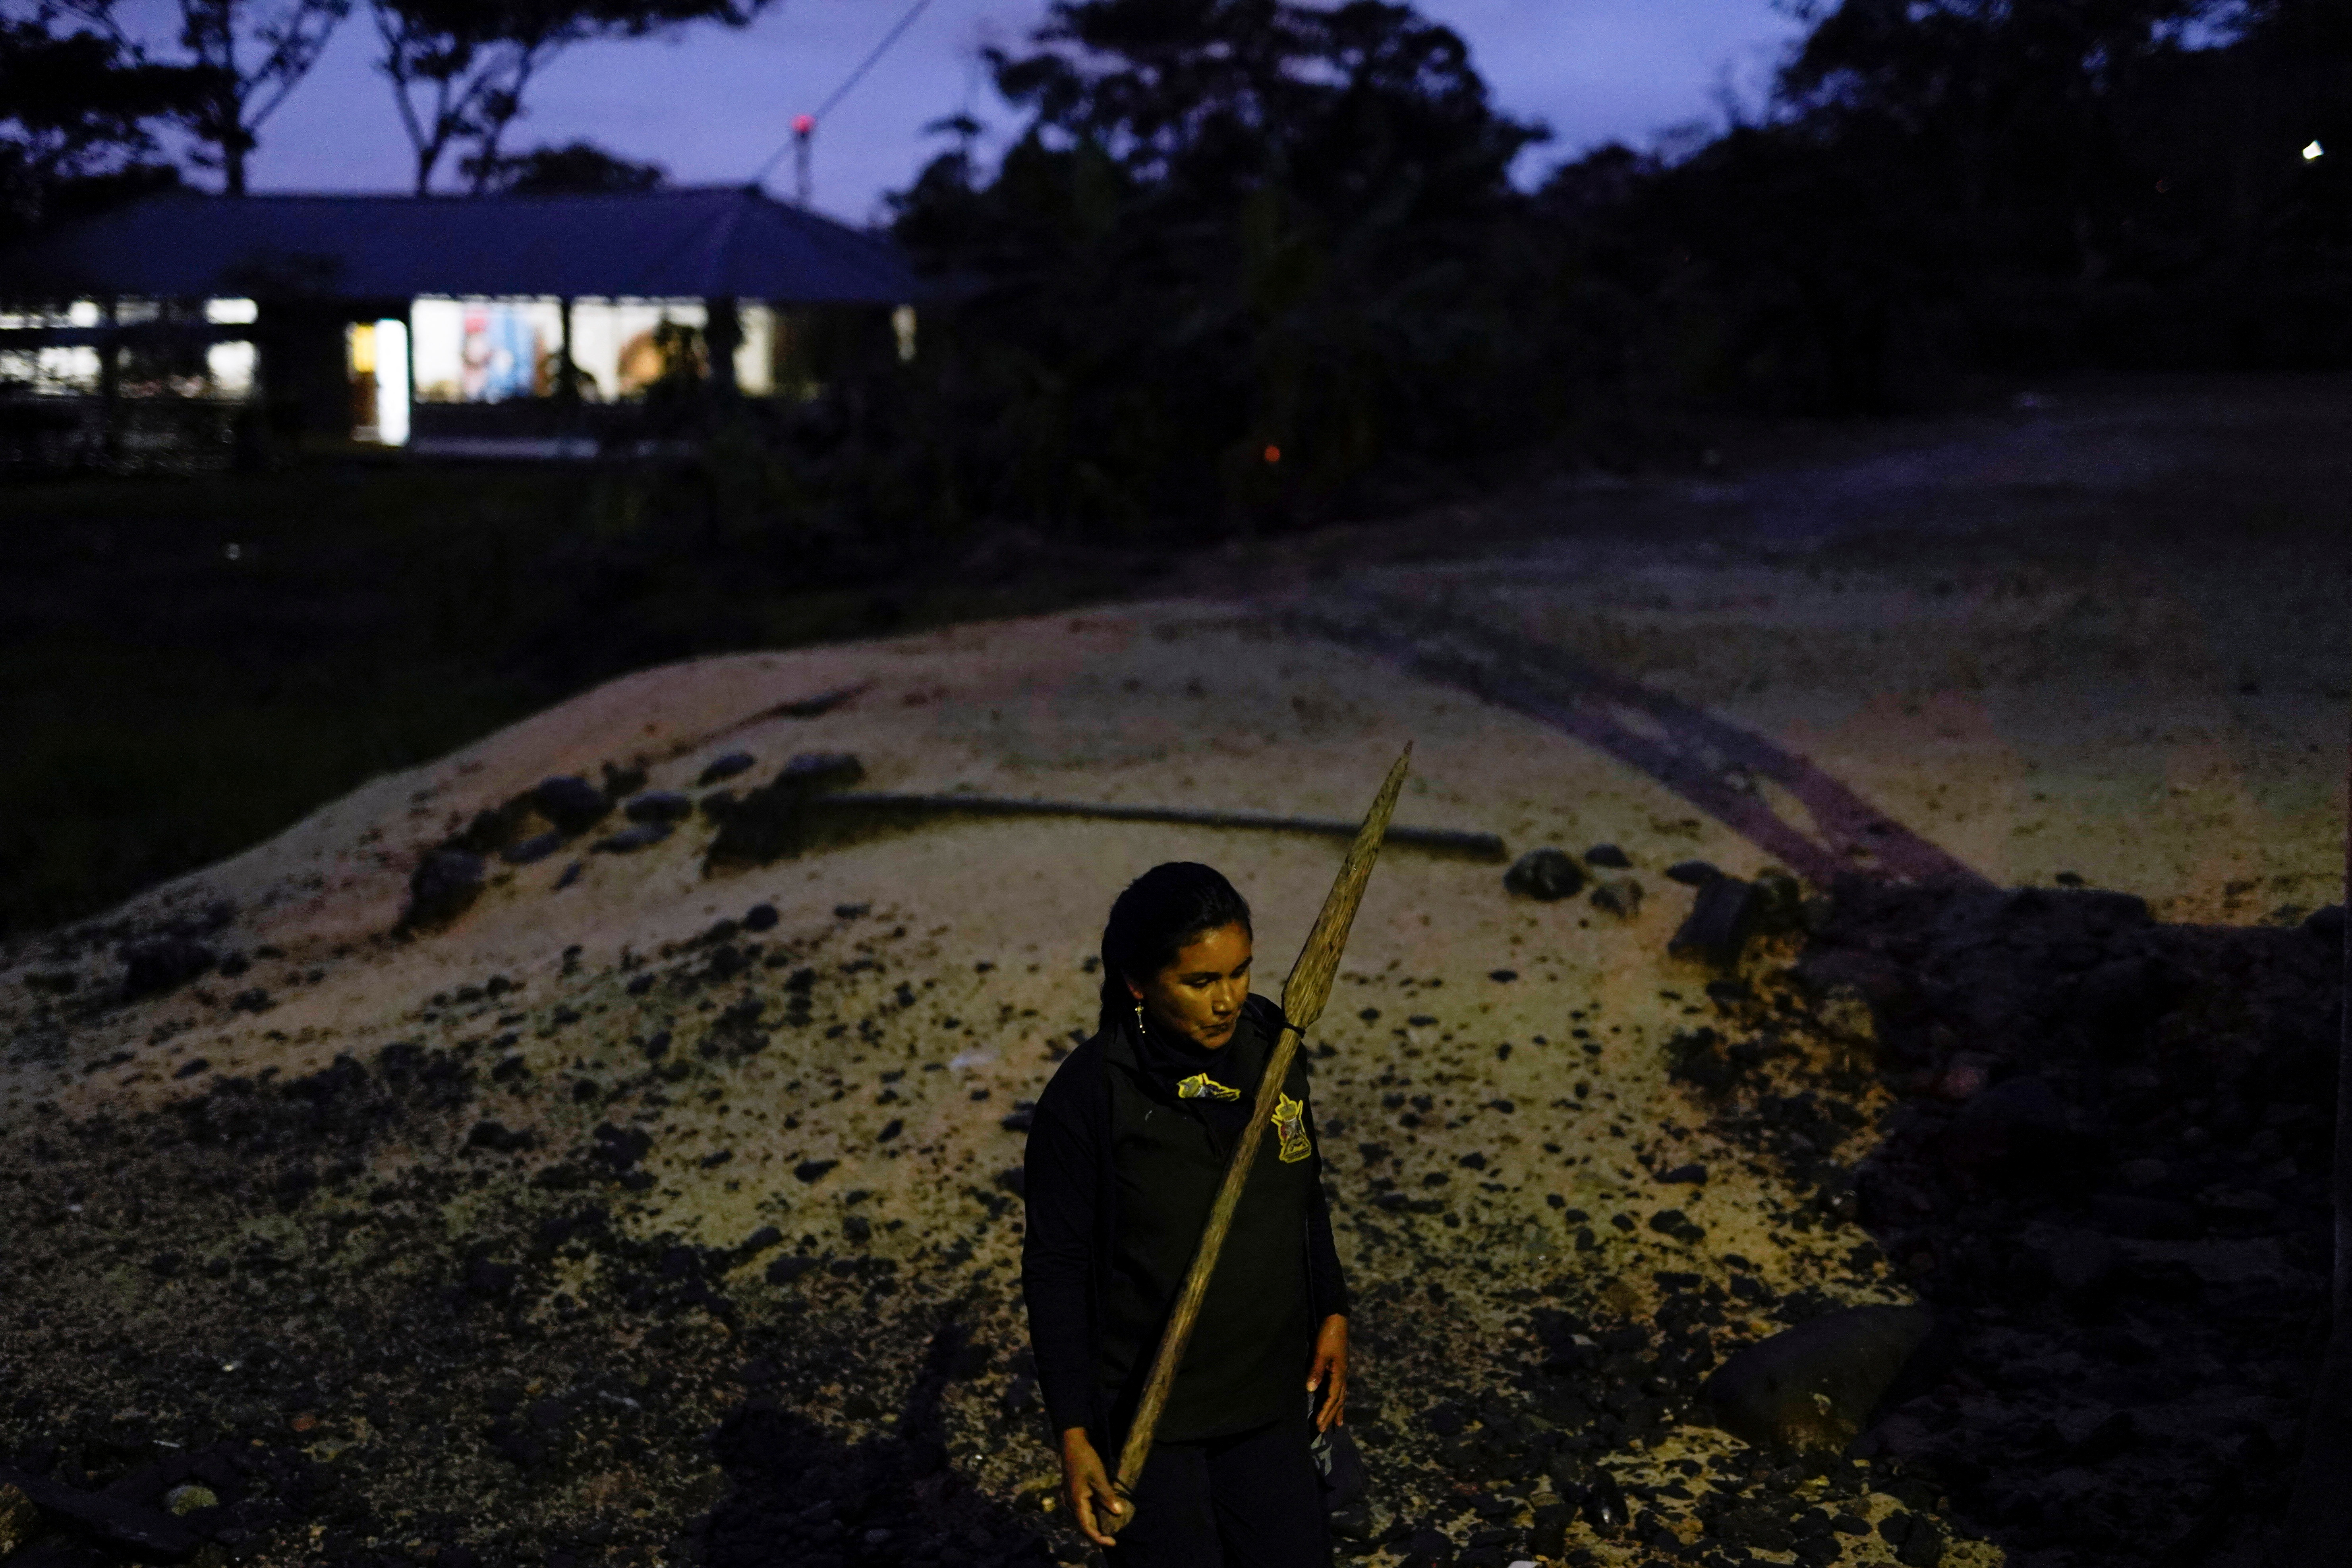 Indigenous communities meet to demand end to extractive industries, in Ecuador